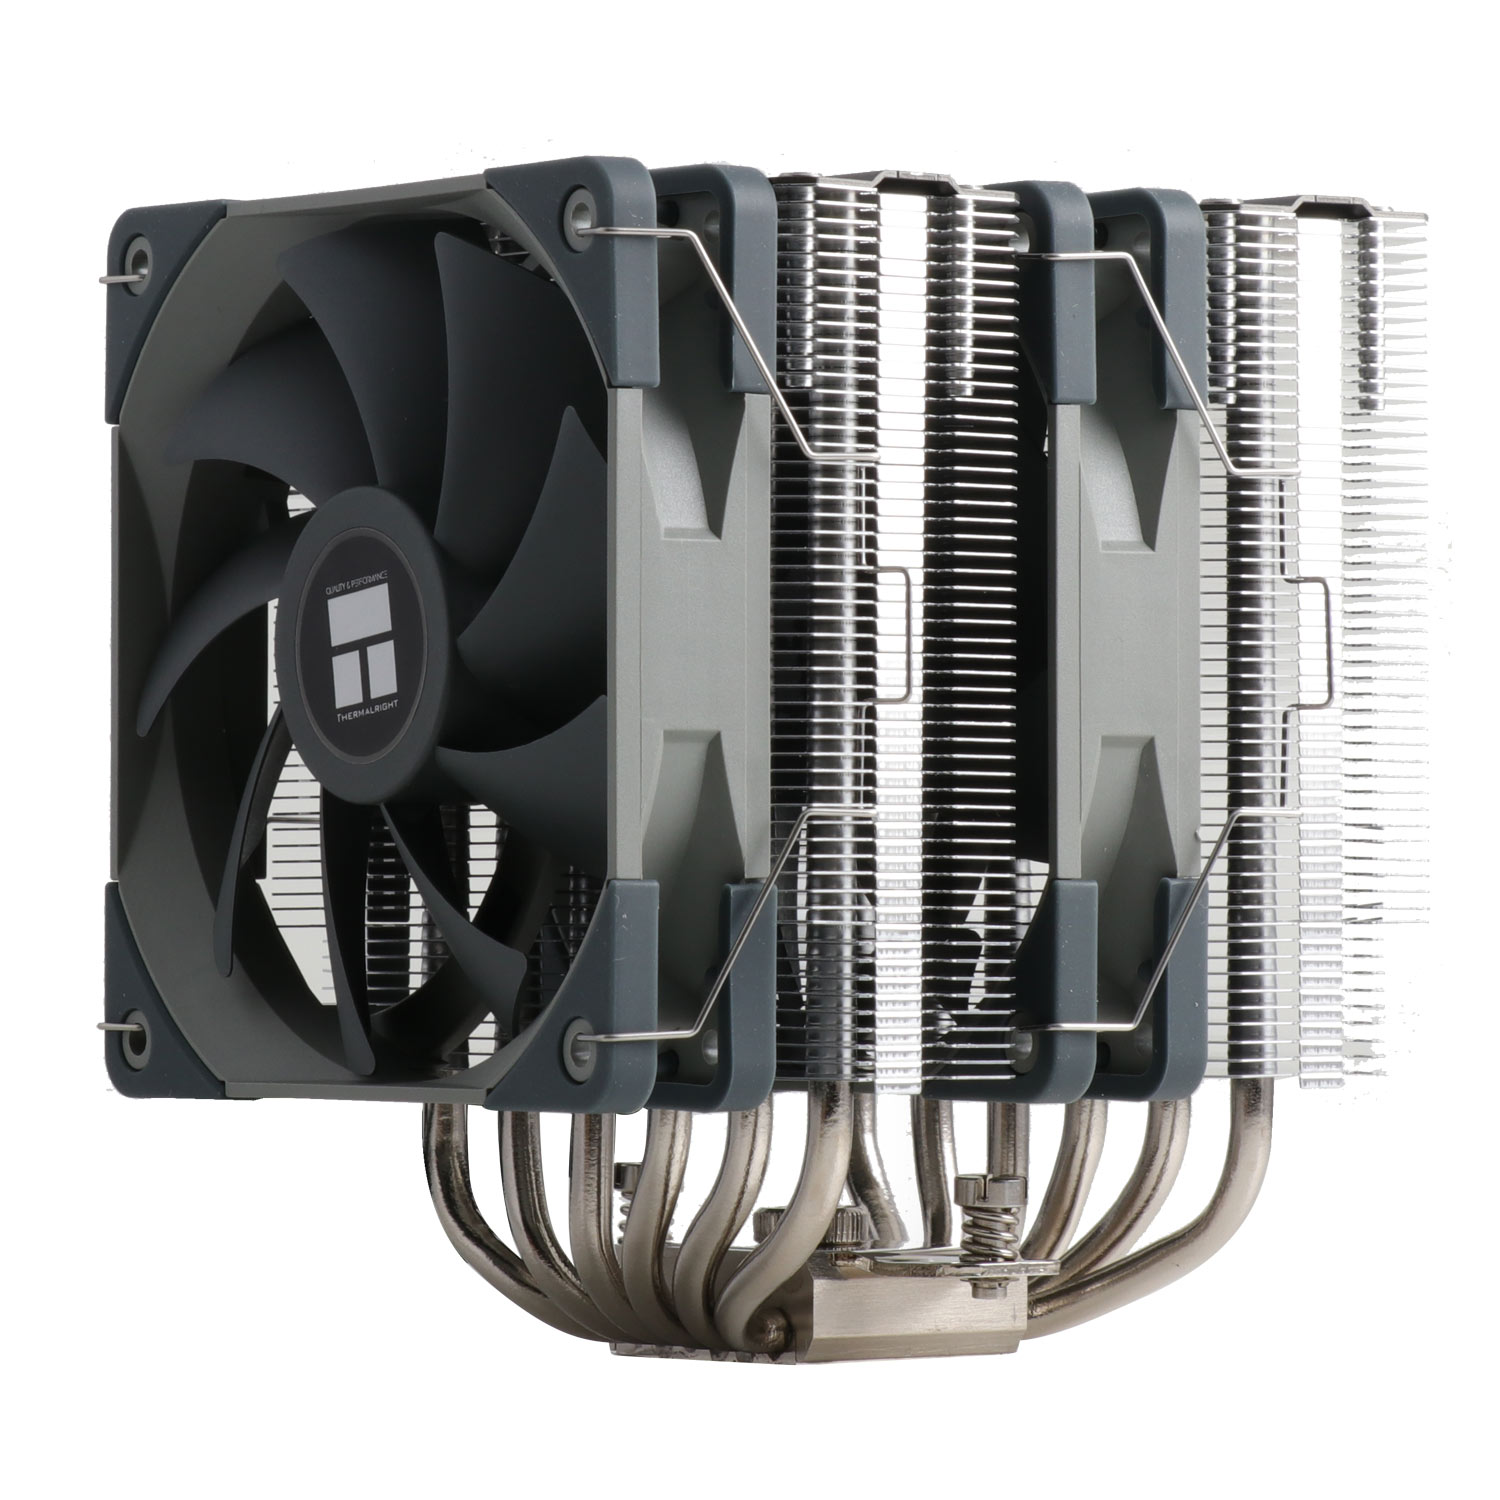 GCP Products GCP-65484074 Peerless Assassin 120 White Cpu Air Cooler, 6  Heat Pipes, Dual 120Mm Tl-C12W Pwm Fan,Aluminium Heatsink Cover, A…